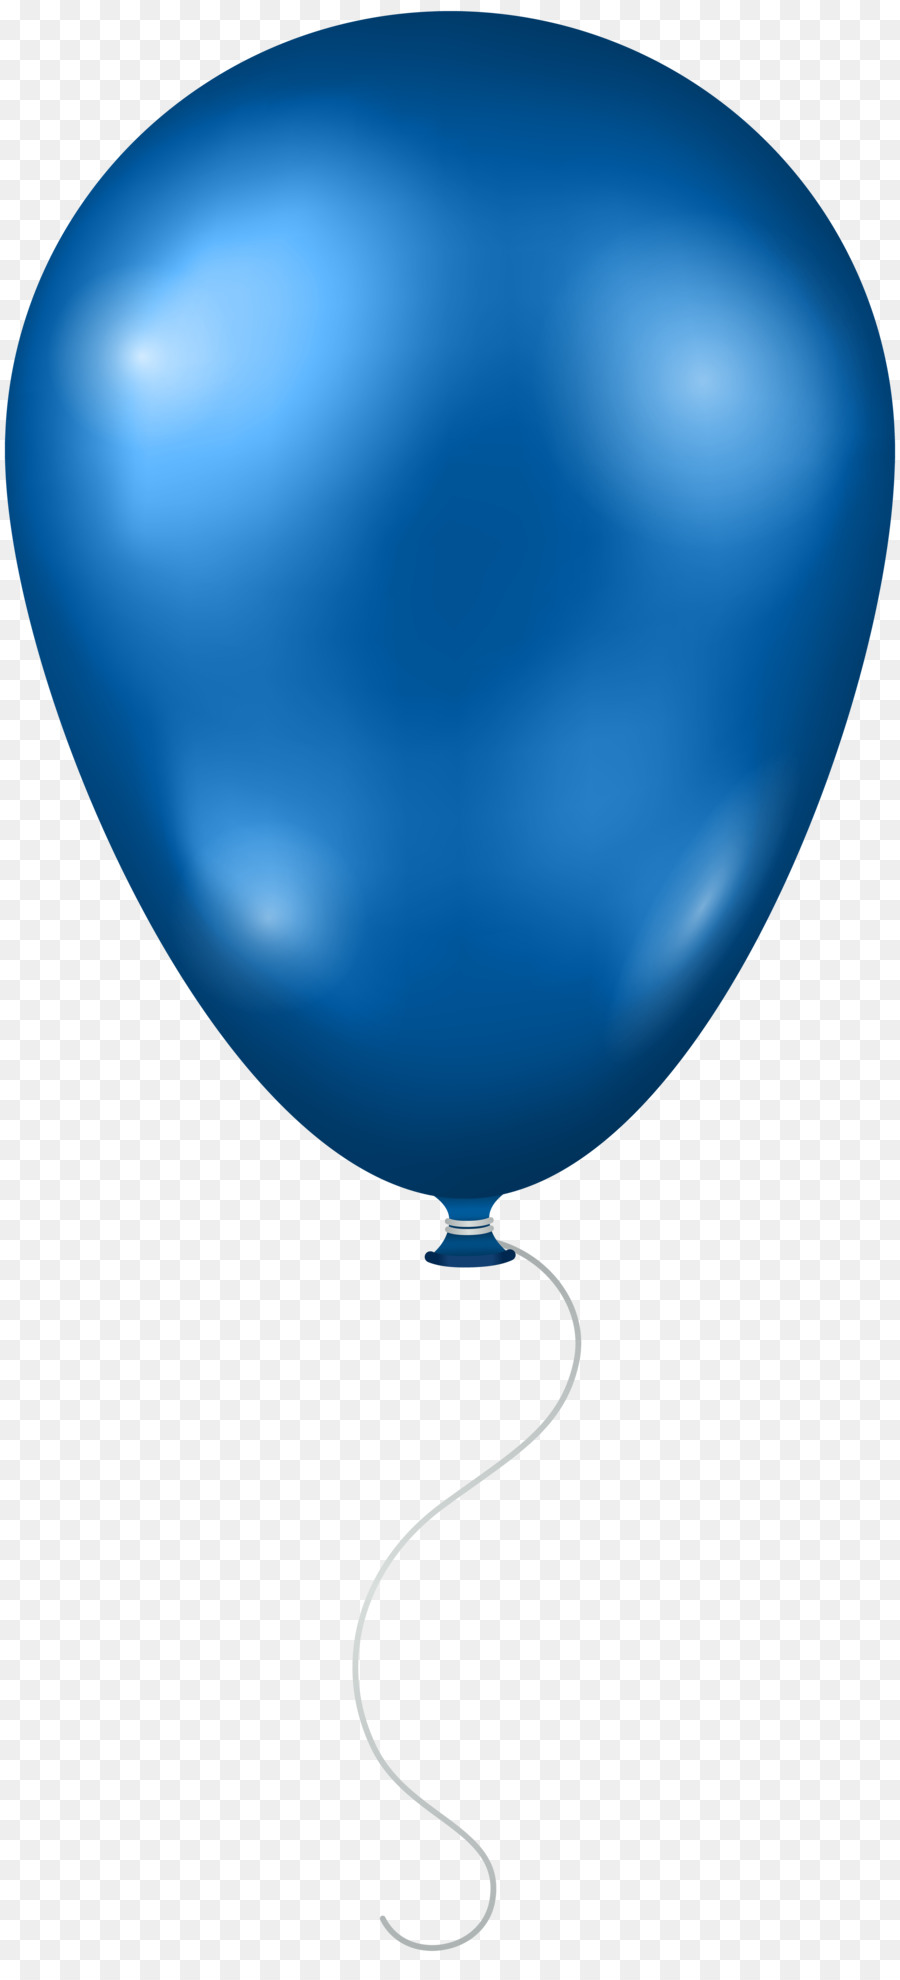 Ballon, Blau, Clip art - Luftballon